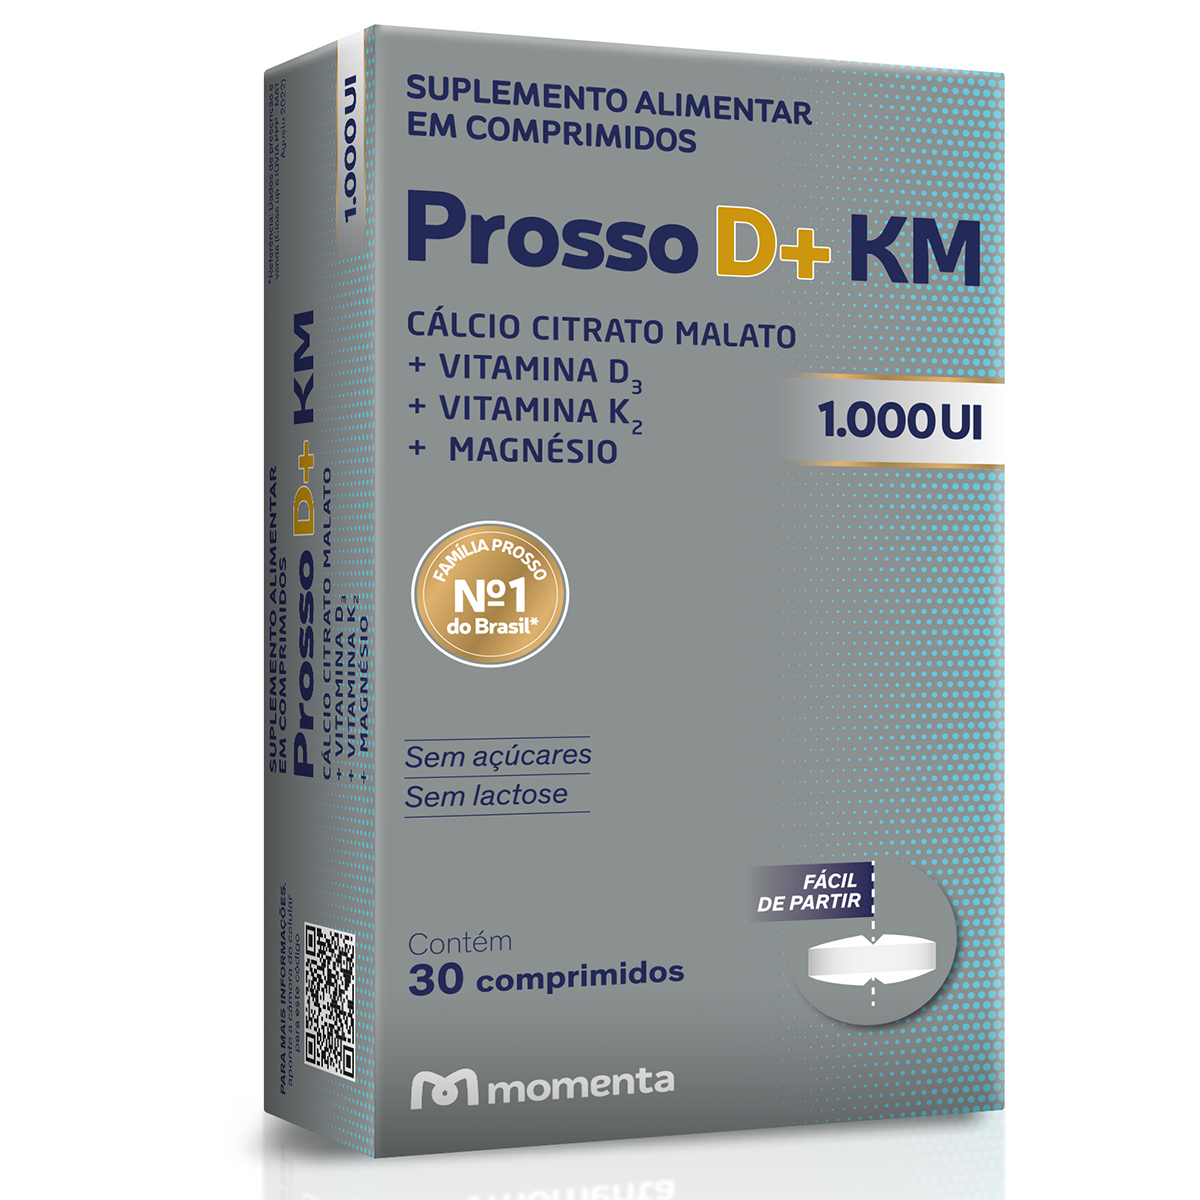 https://img.drogaraia.com.br/media/catalog/product/p/r/prosso-d-km-1000ui-30-comprimidos-610152-1.png